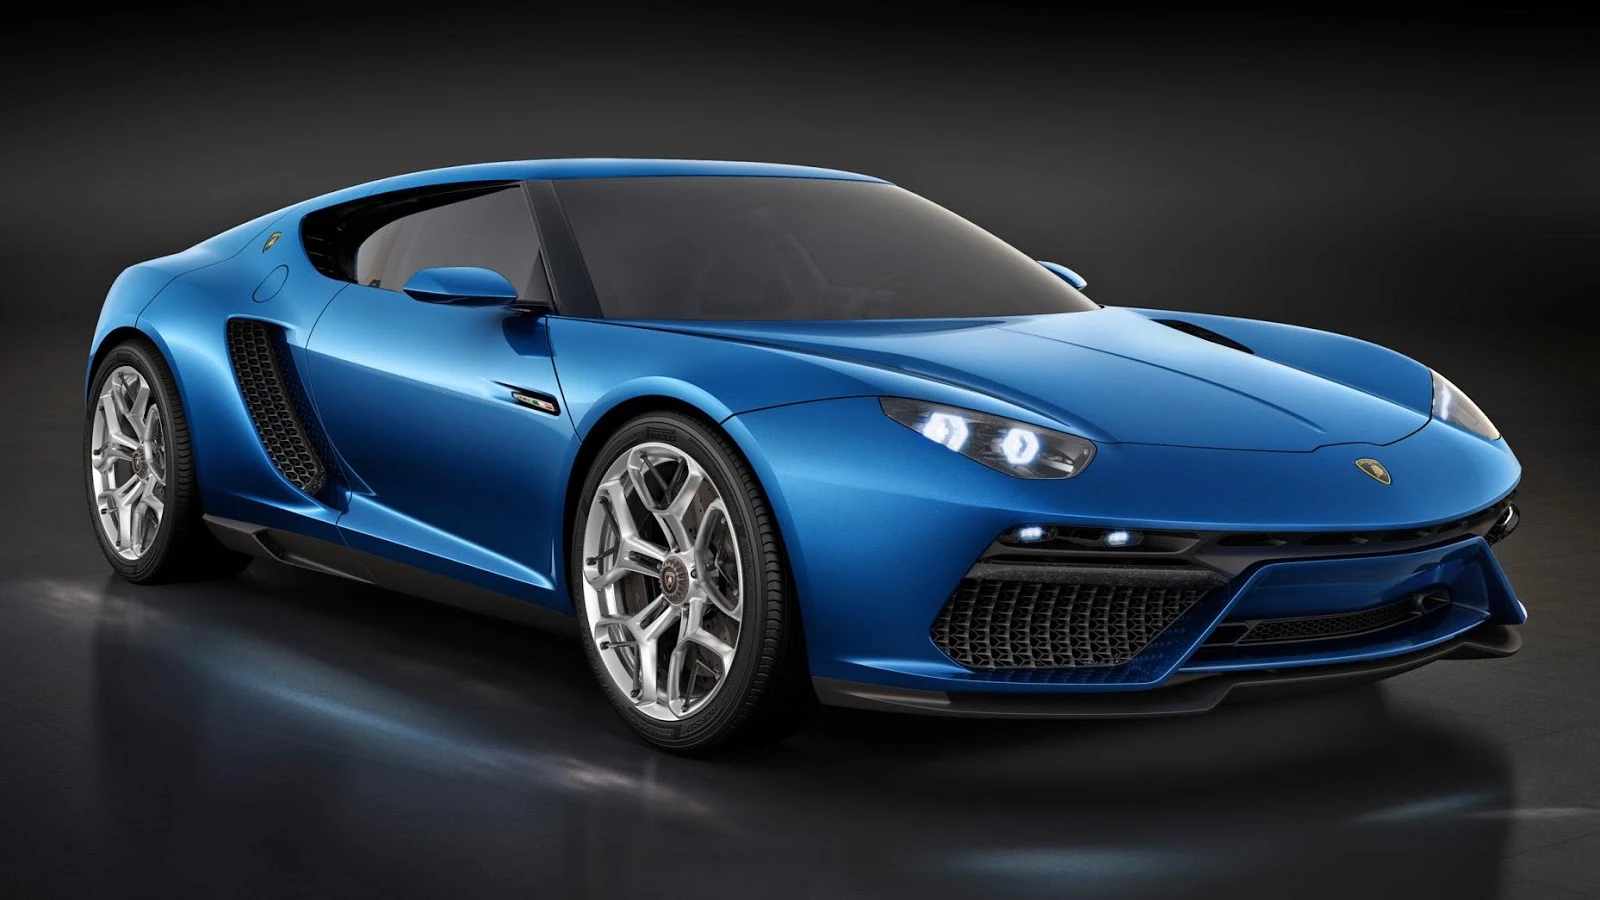 Lamborghini Asterion Concept